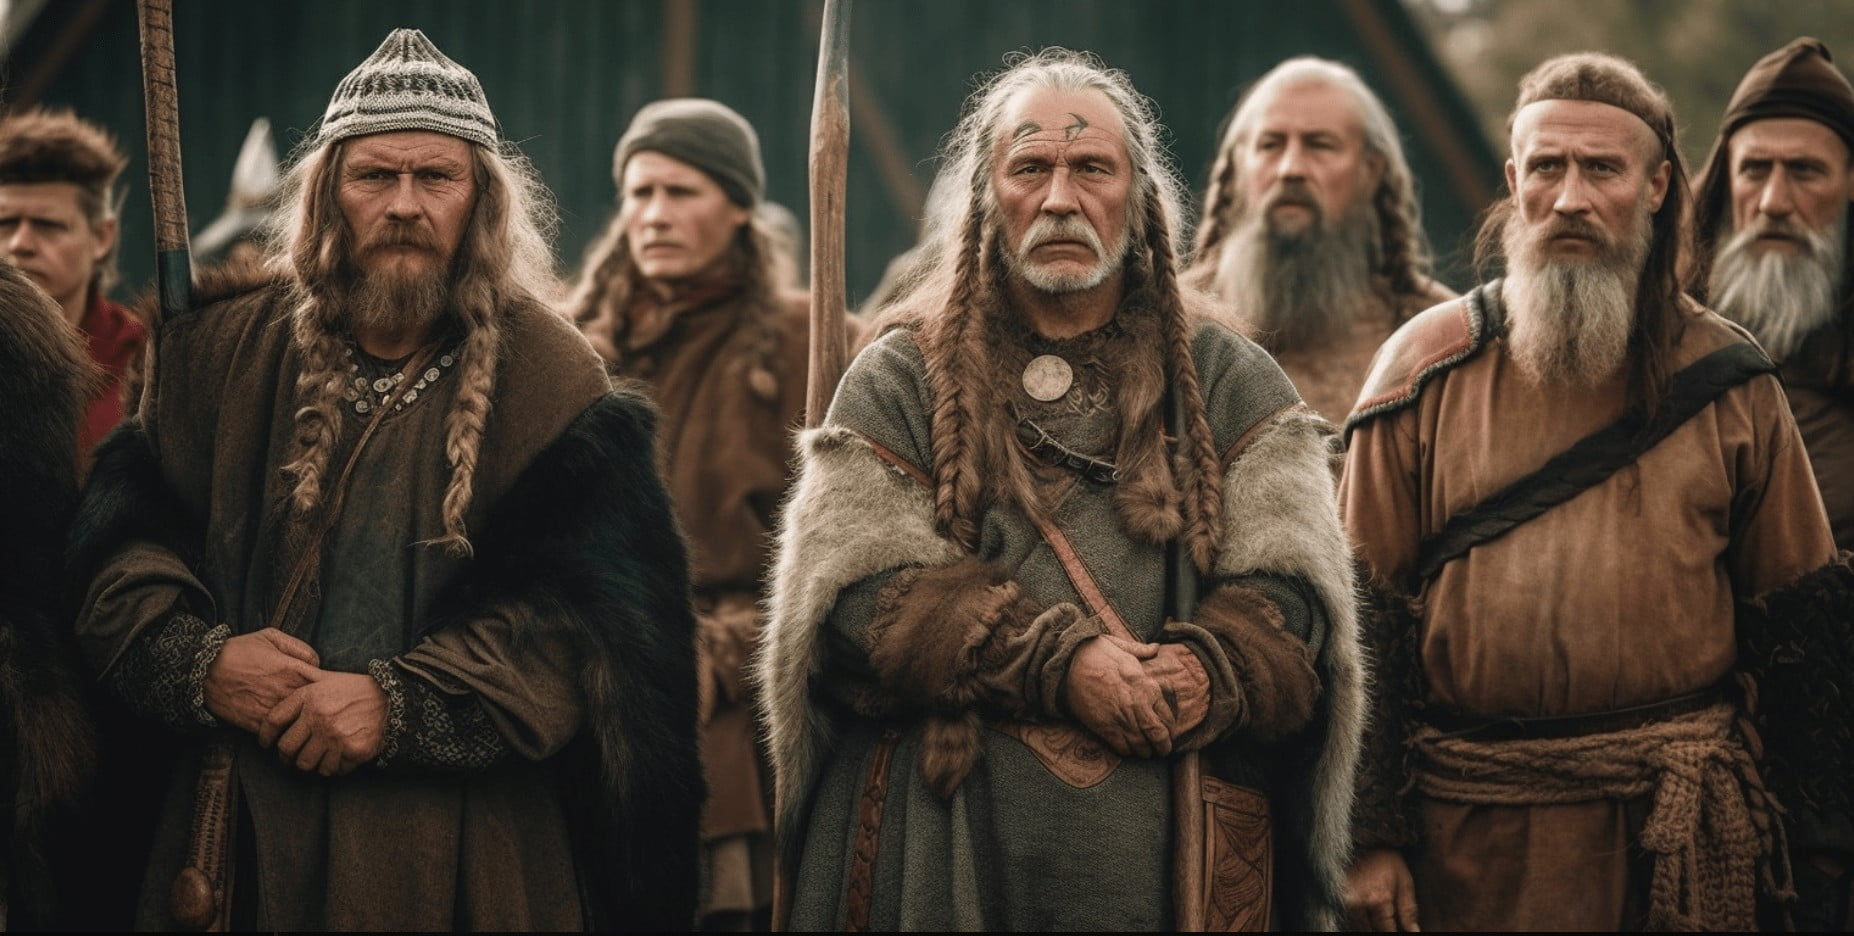 Viking Fur Leg Guards